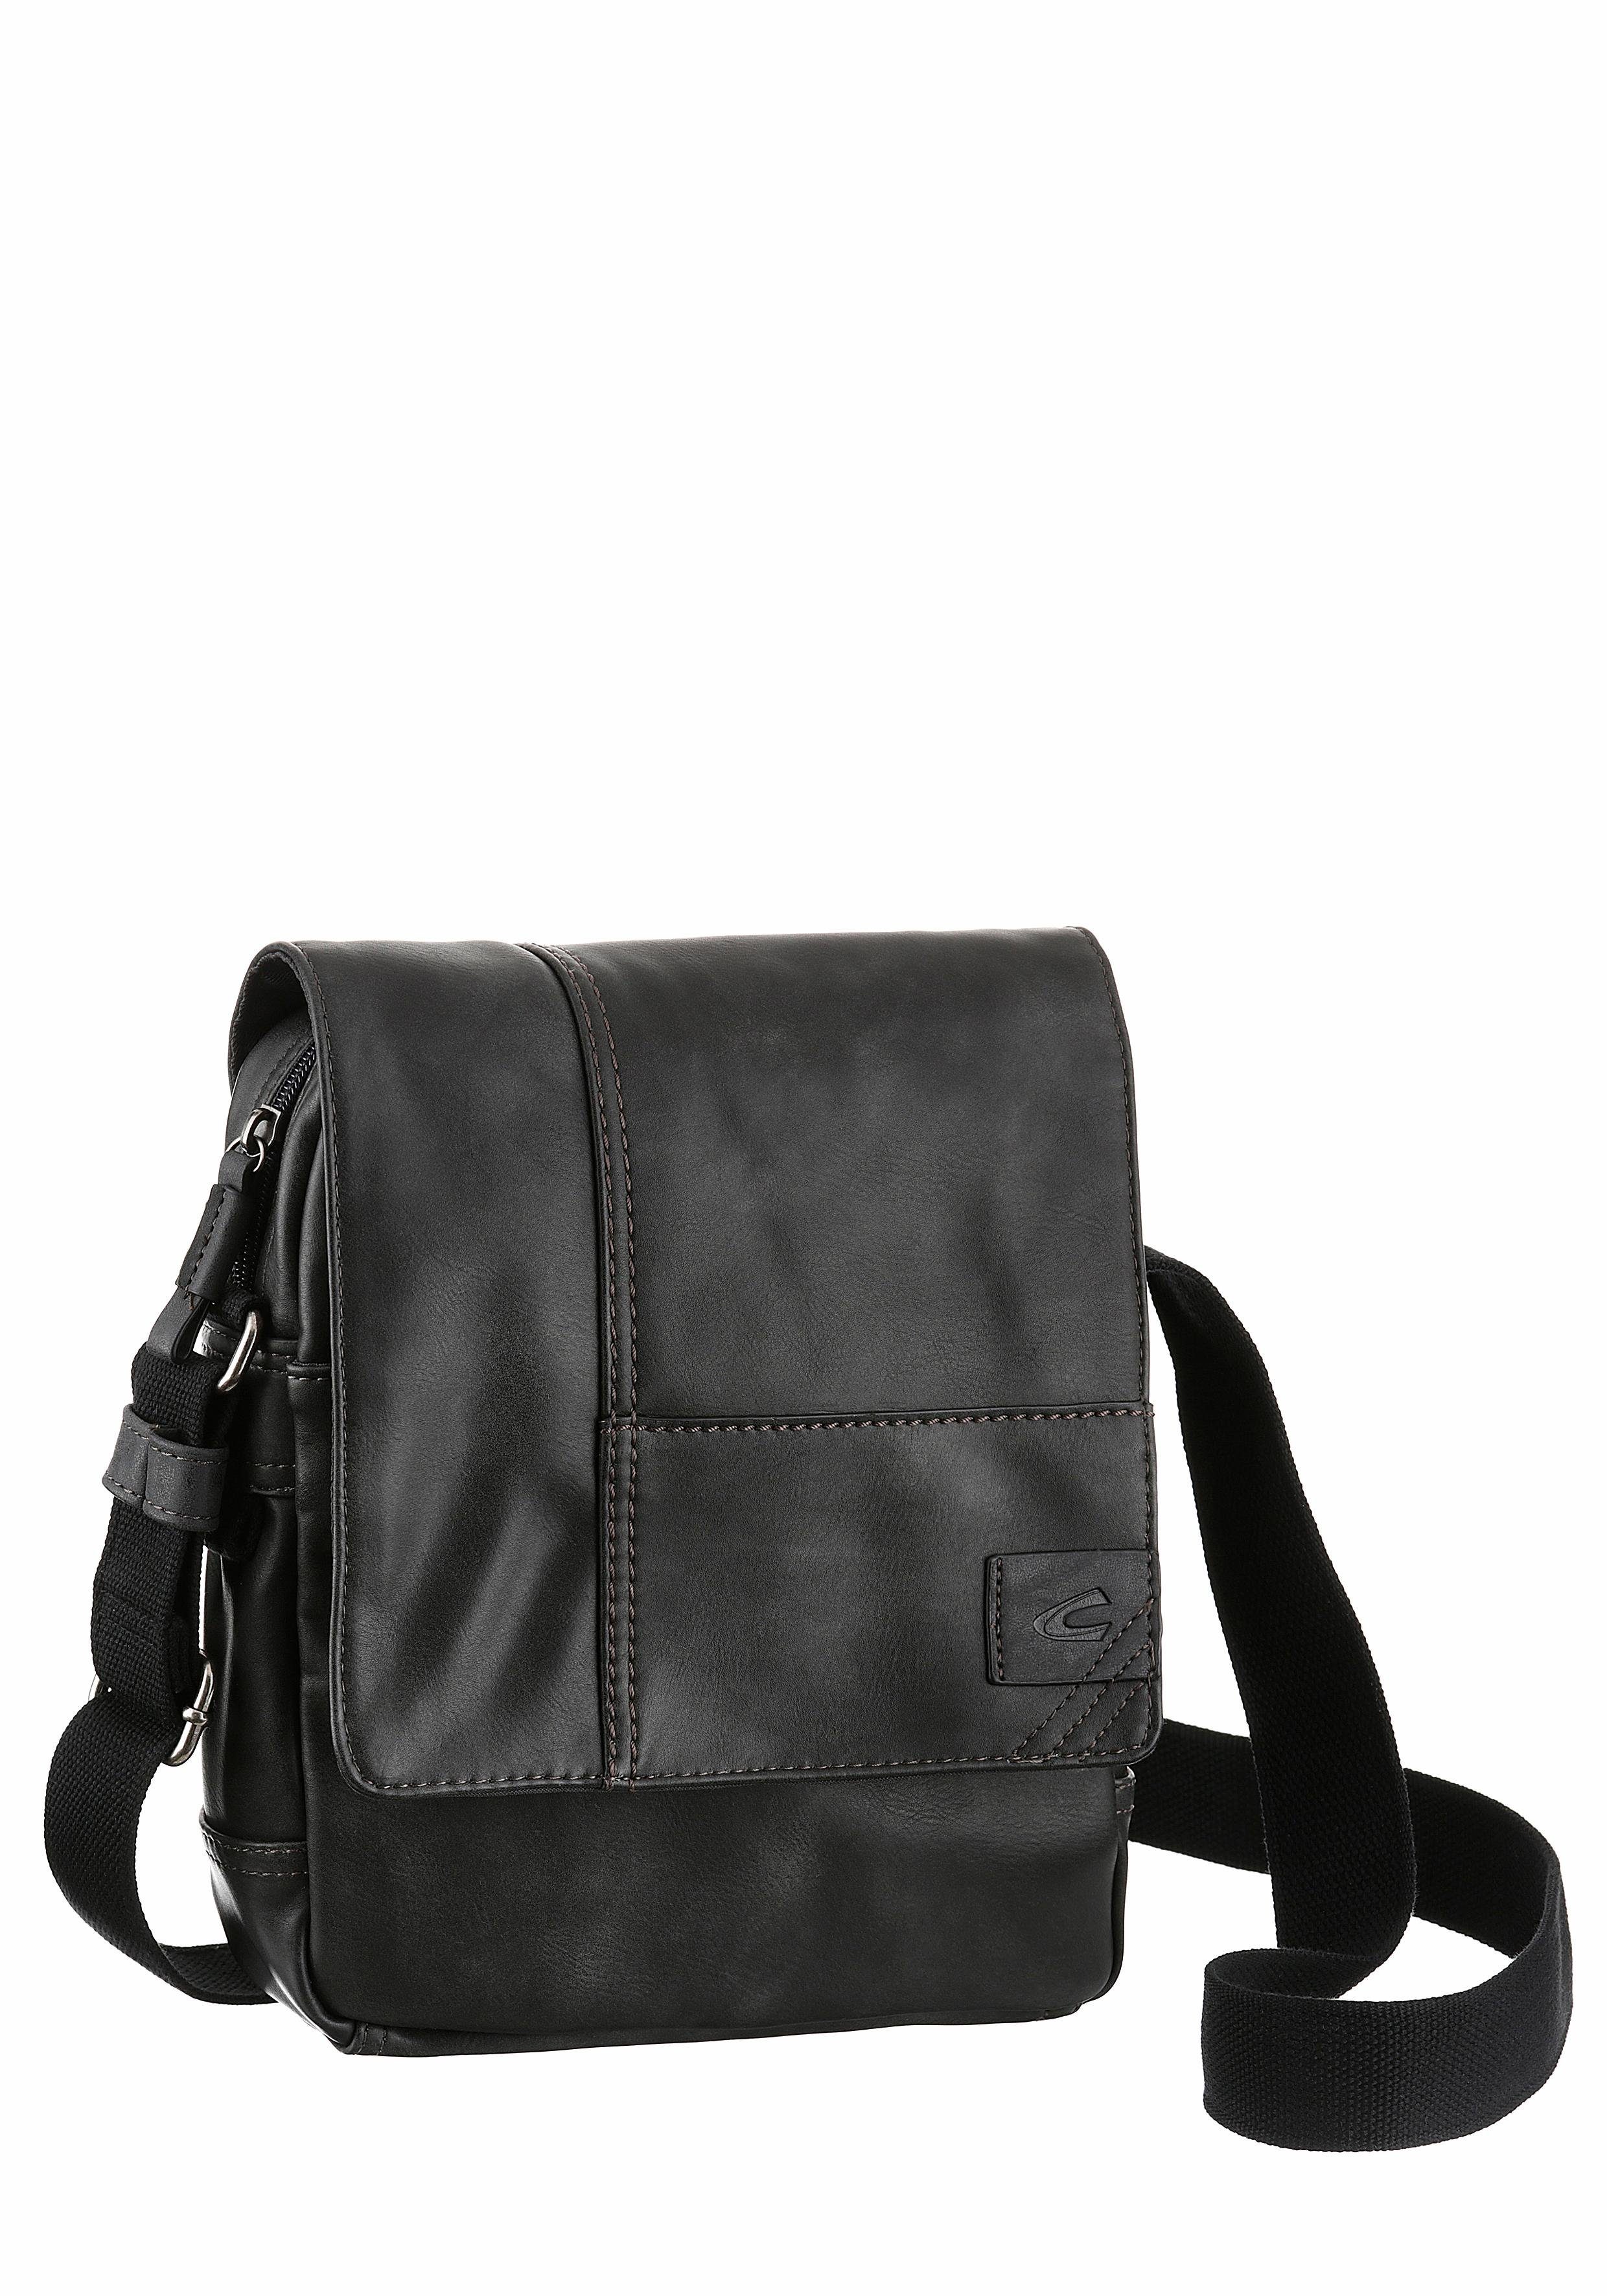 camel active Umhängetasche »LAOS Flap bag S top zip«, mit verstellbarem  Umhängeriemen online kaufen | OTTO